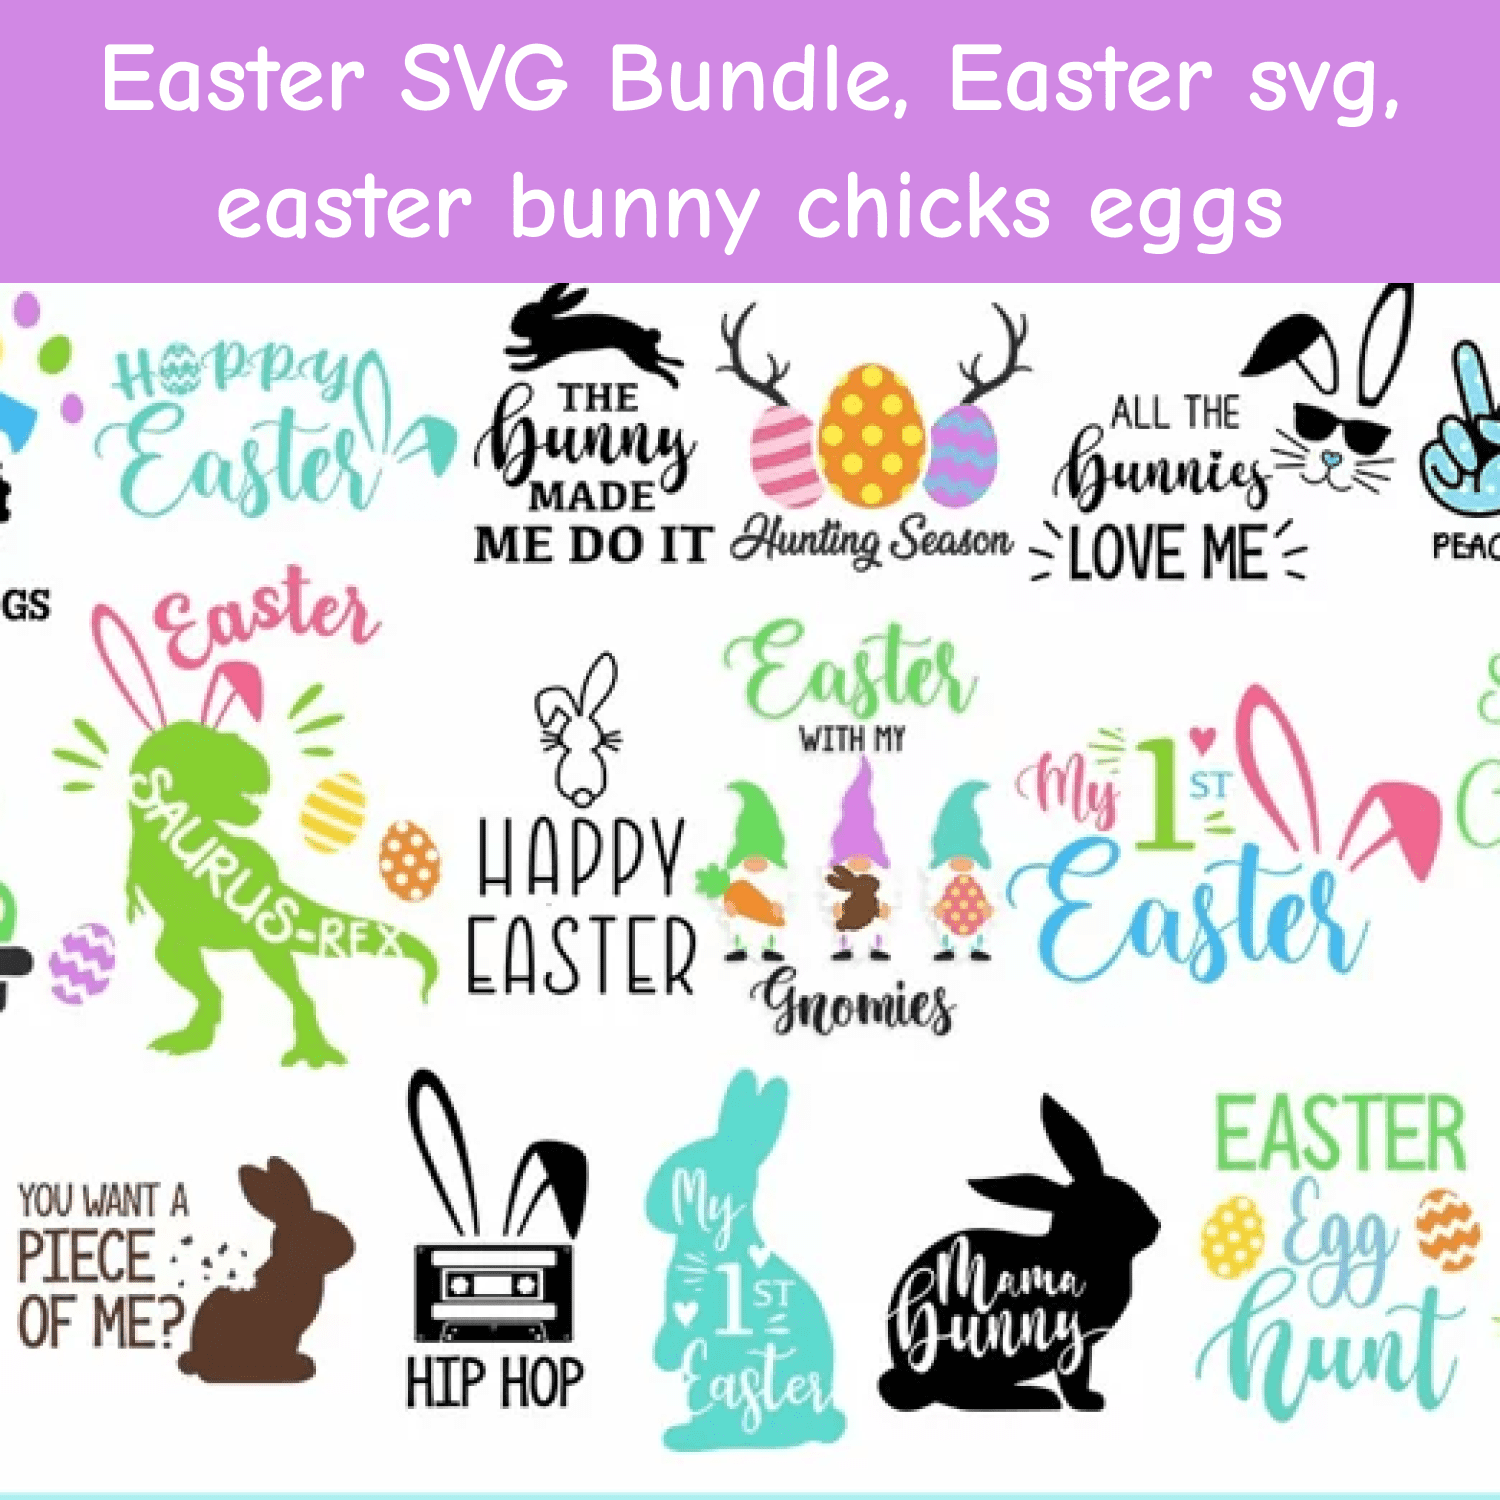 Easter SVG Bundle, Easter svg, easter bunny chicks eggs.